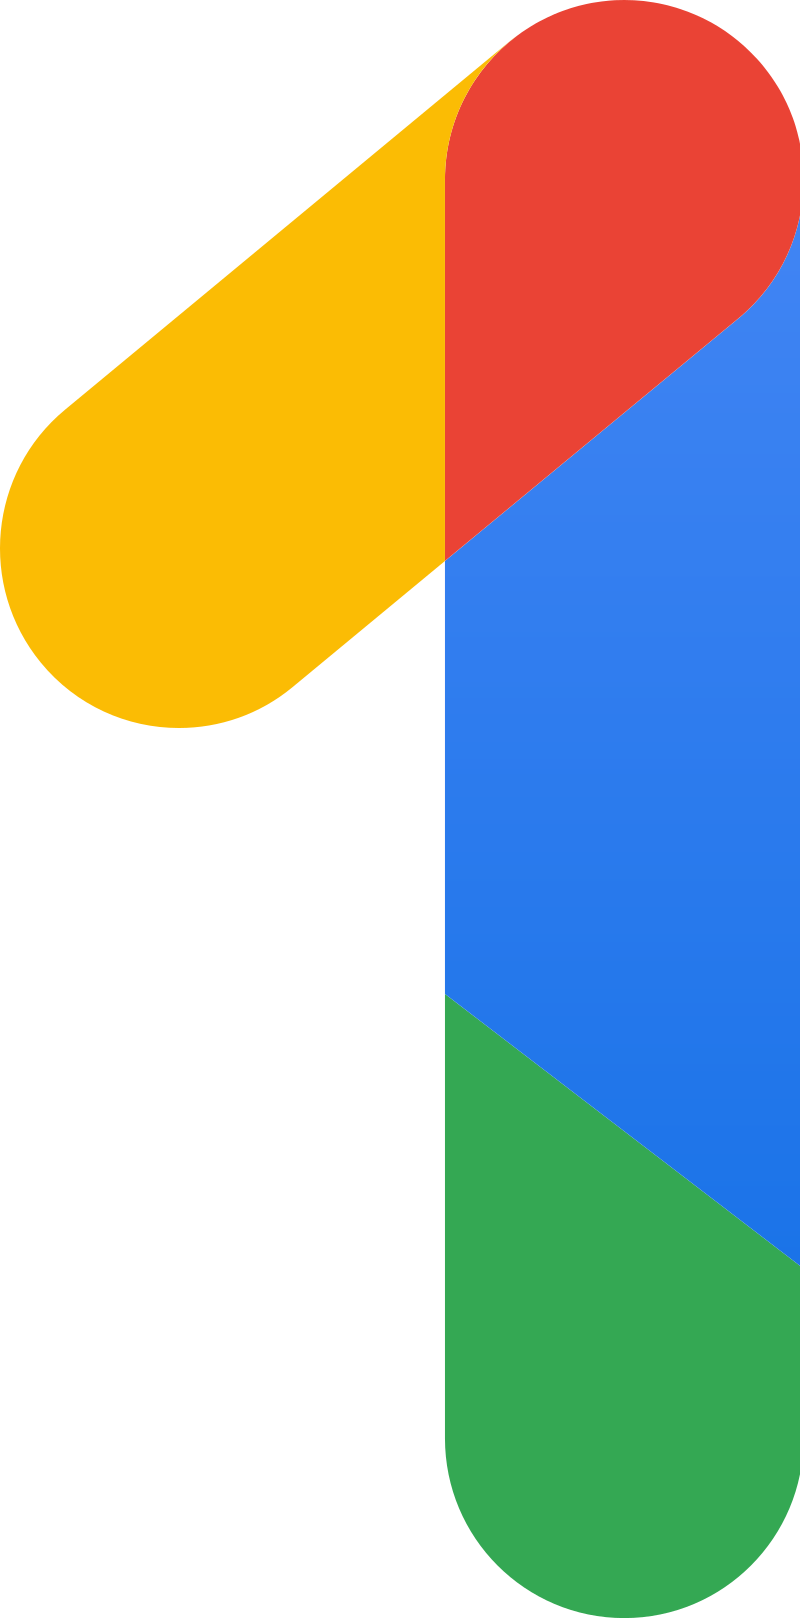 Google One - Google Drive - Google Диск - Сервис хранения, редактирования и синхронизации файлов